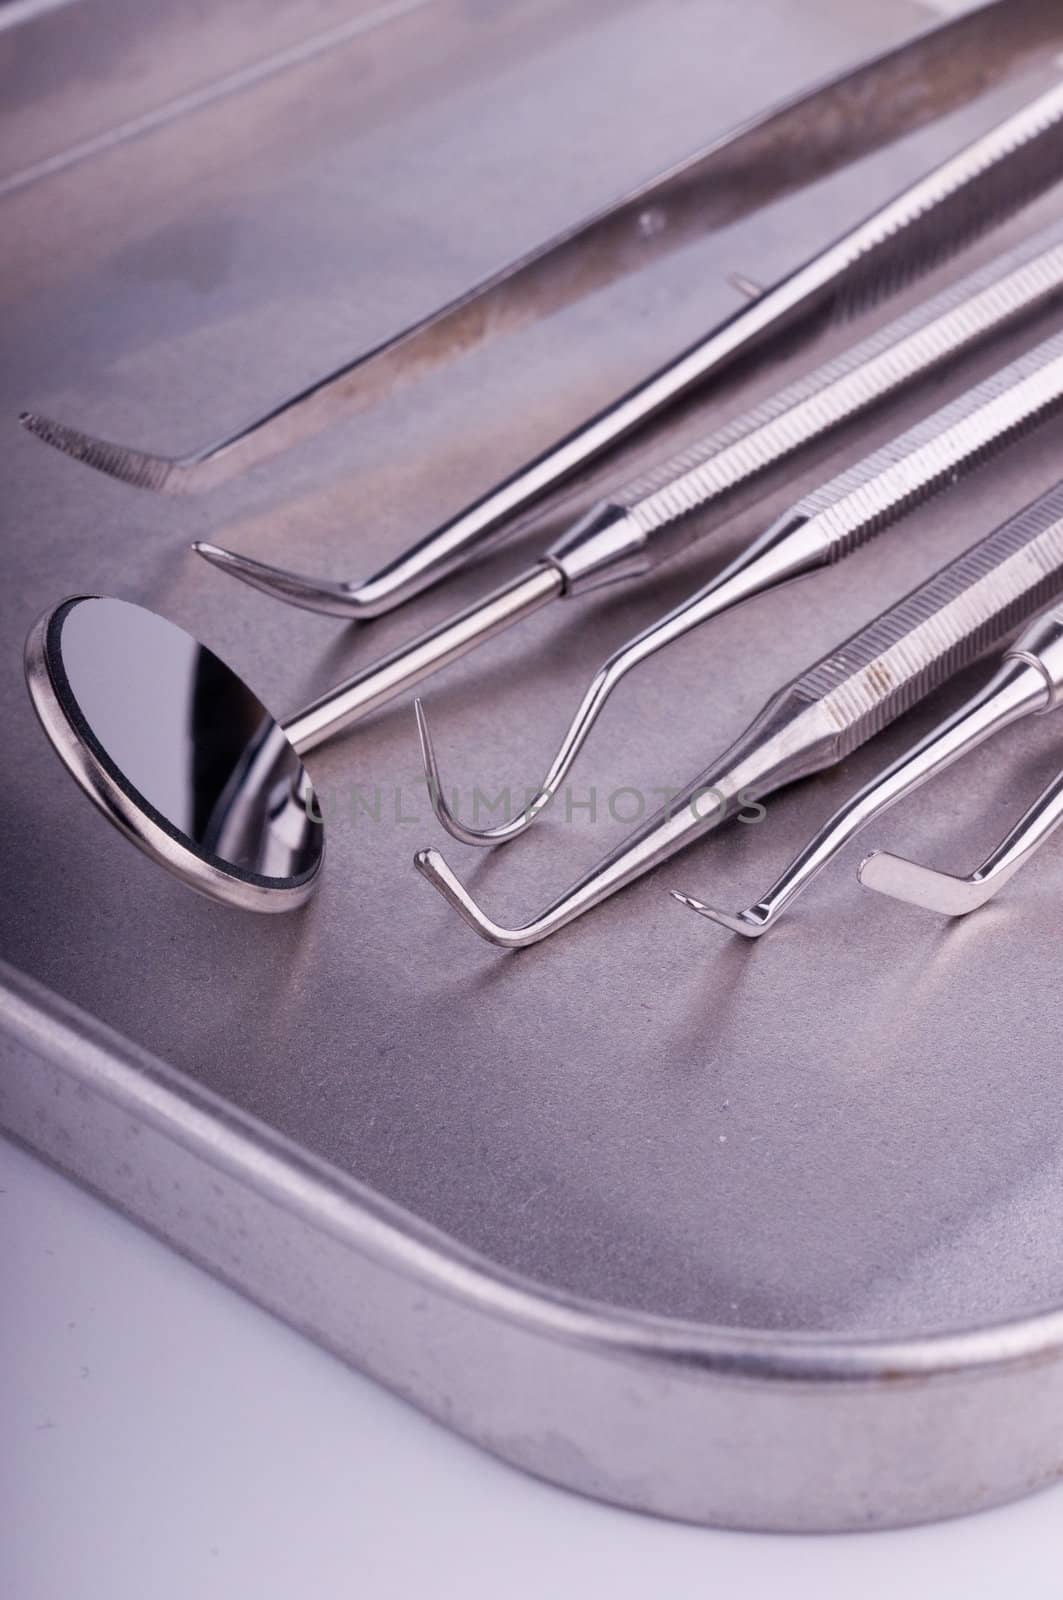 Dentist tools on metal tray